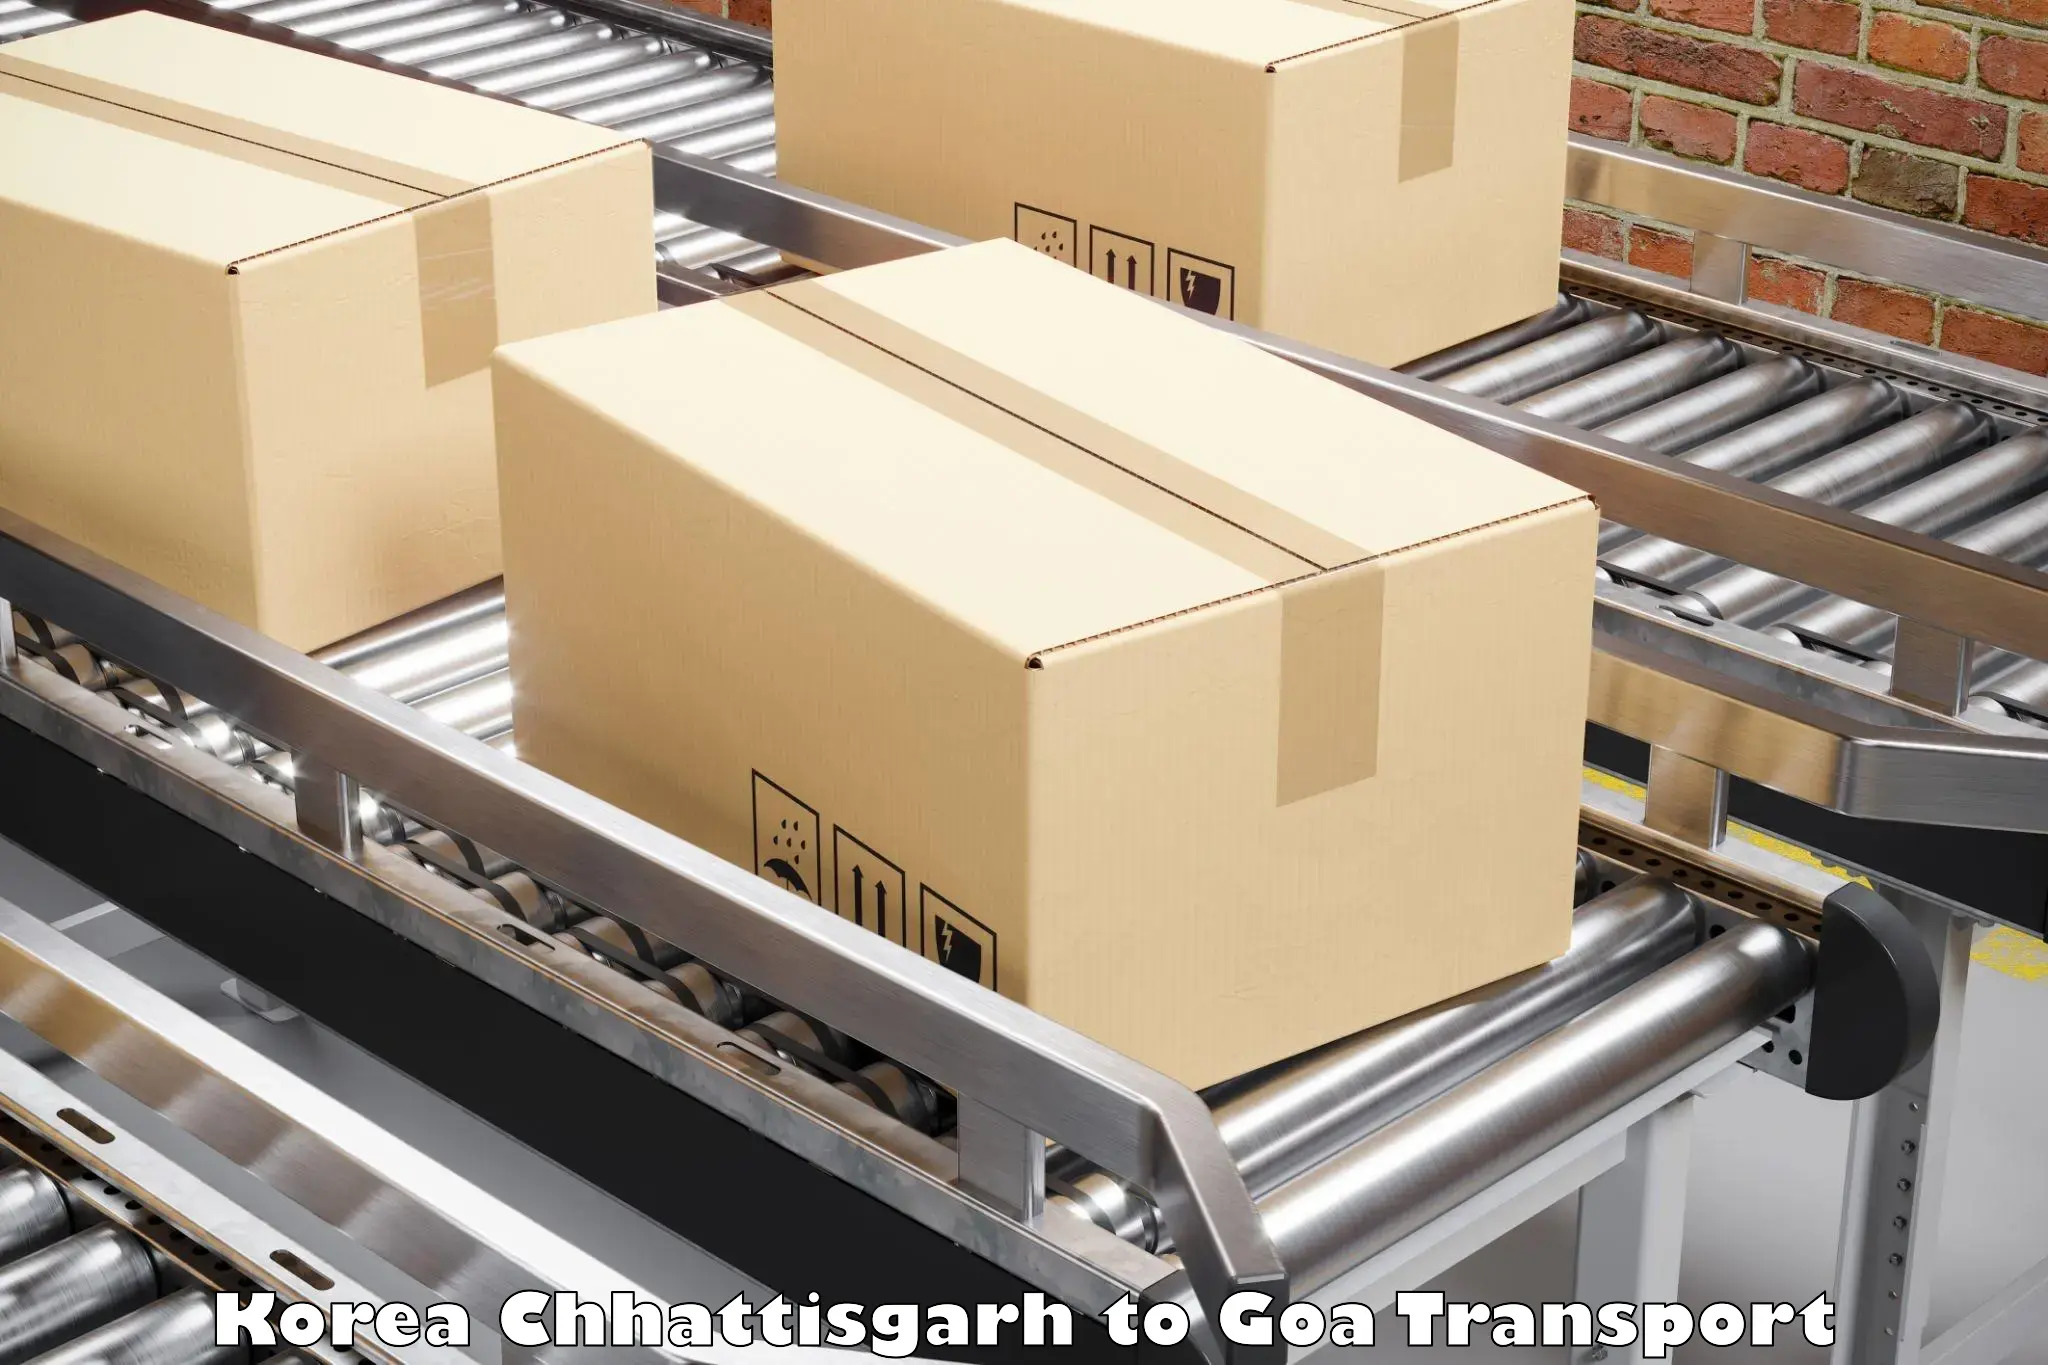 Cargo transport services Korea Chhattisgarh to Canacona